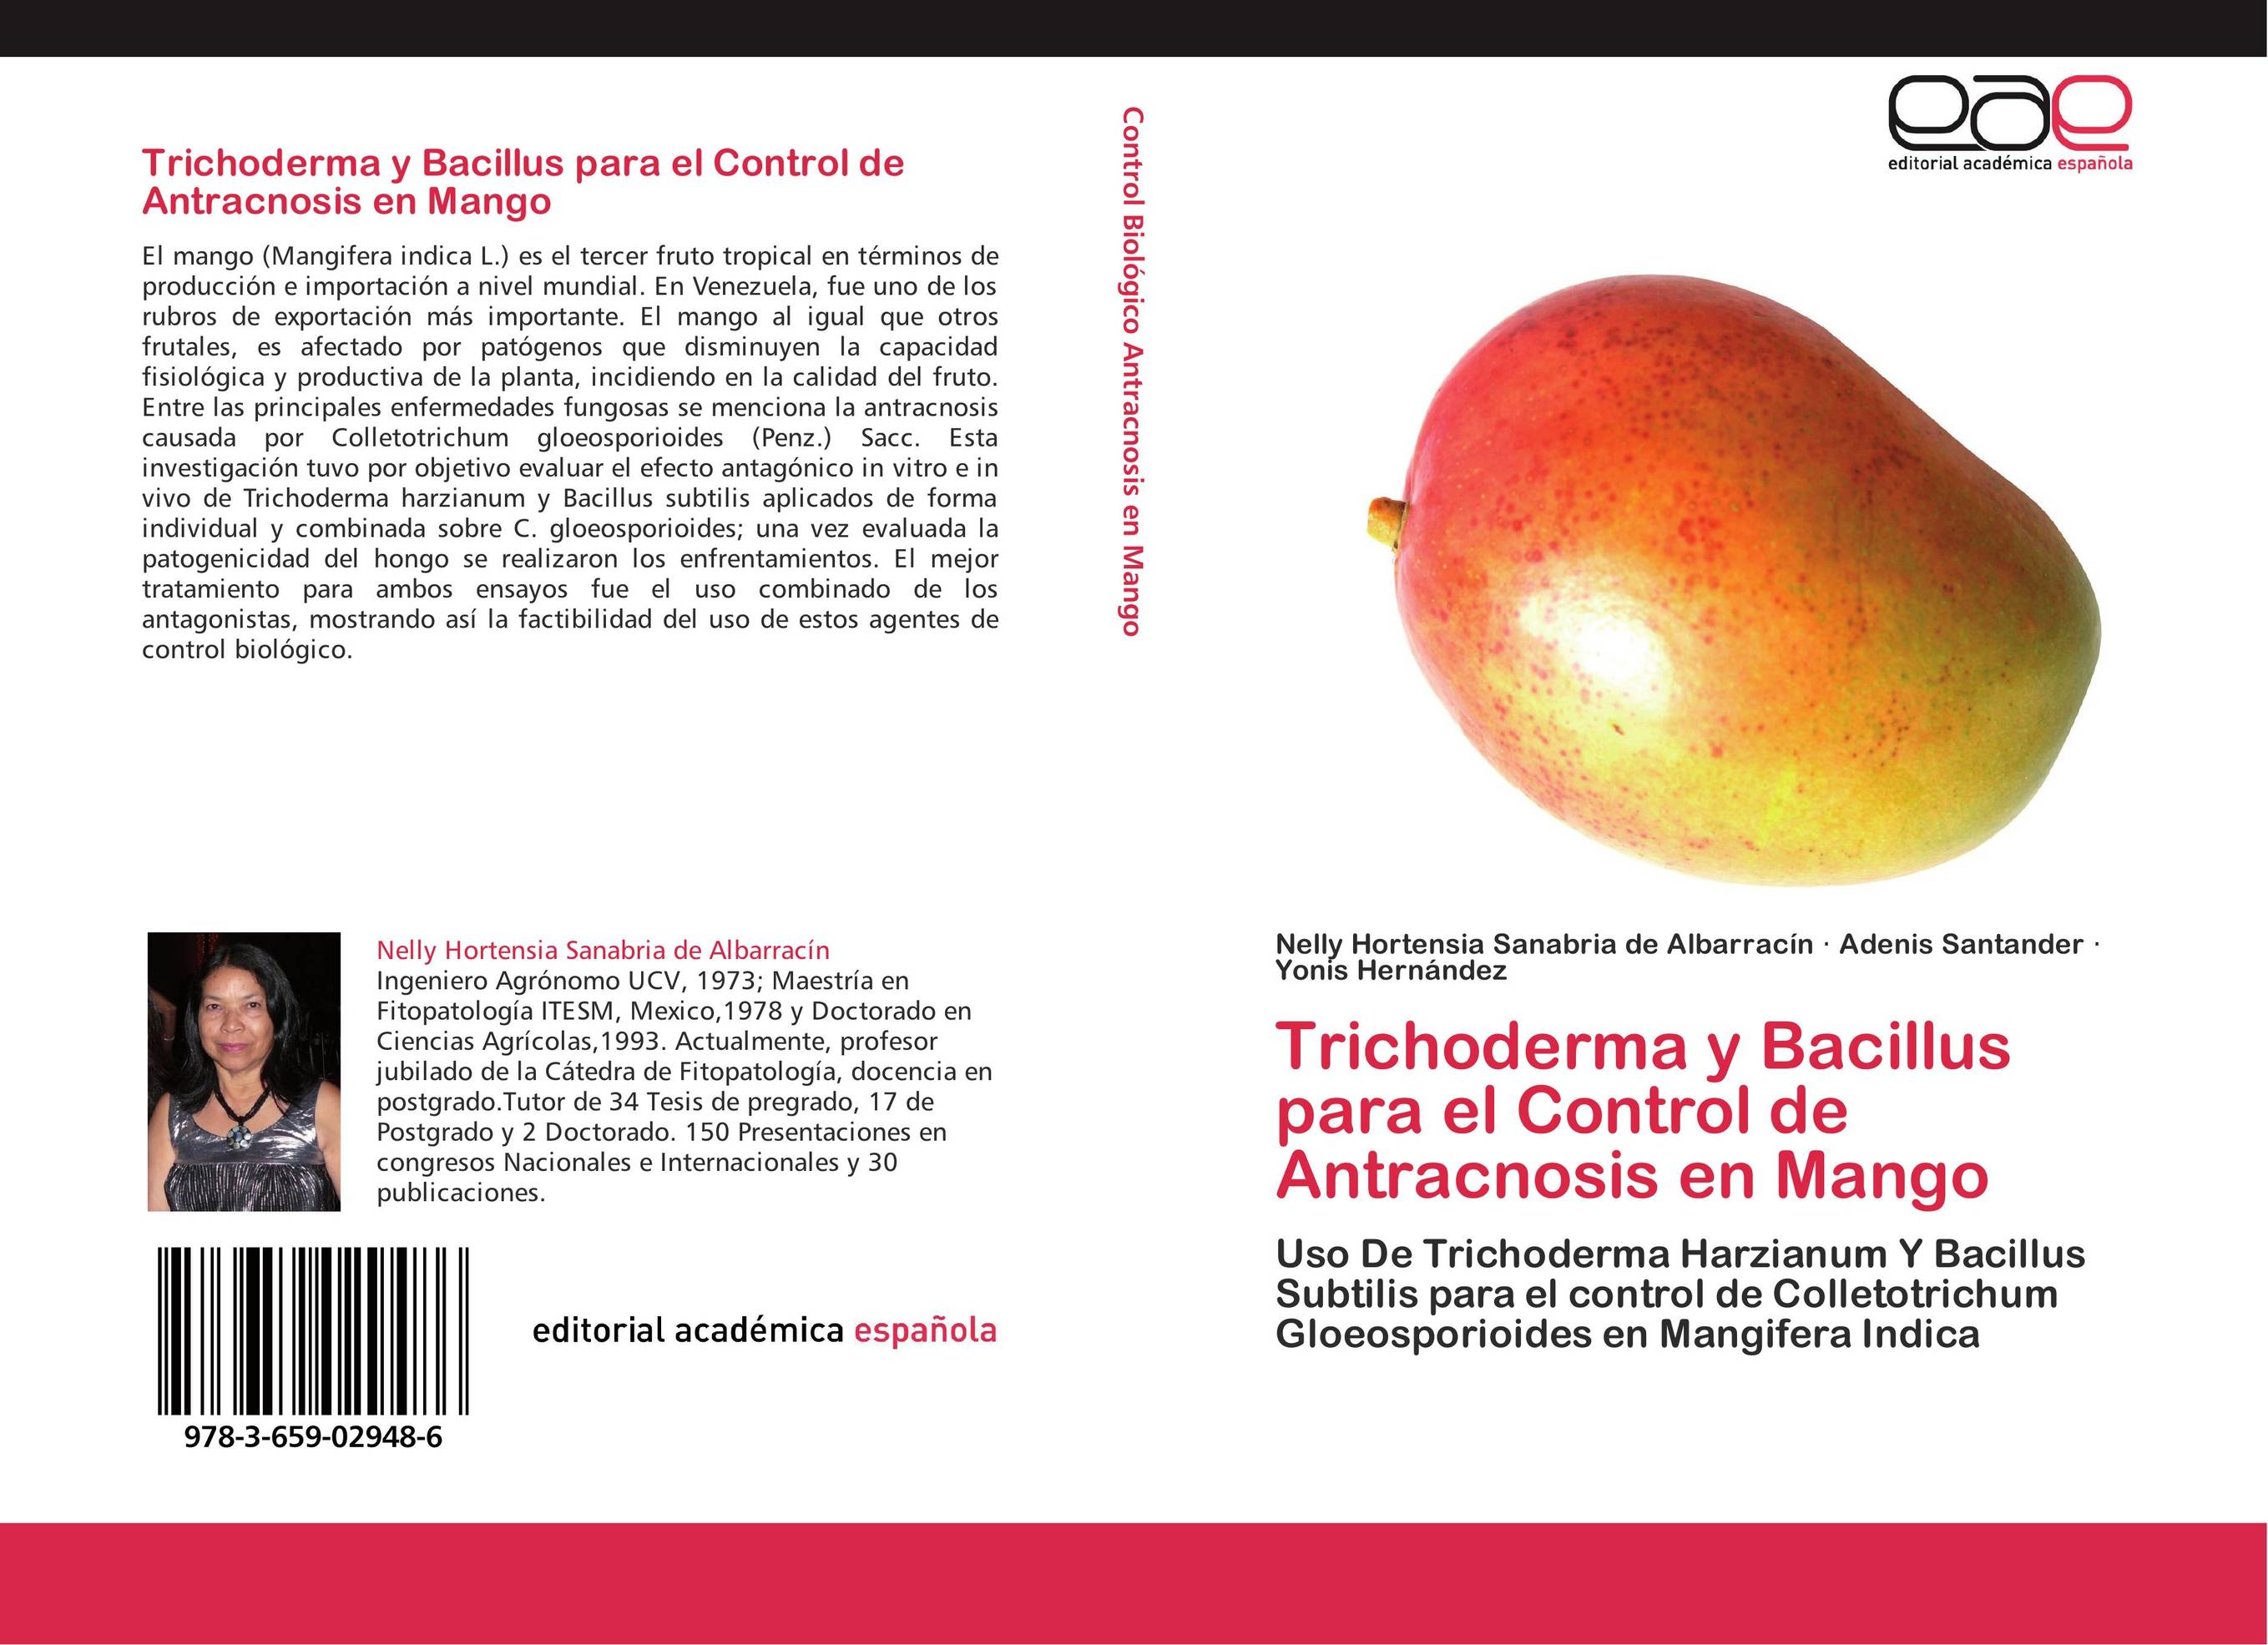 Trichoderma y Bacillus para el Control de Antracnosis en Mango